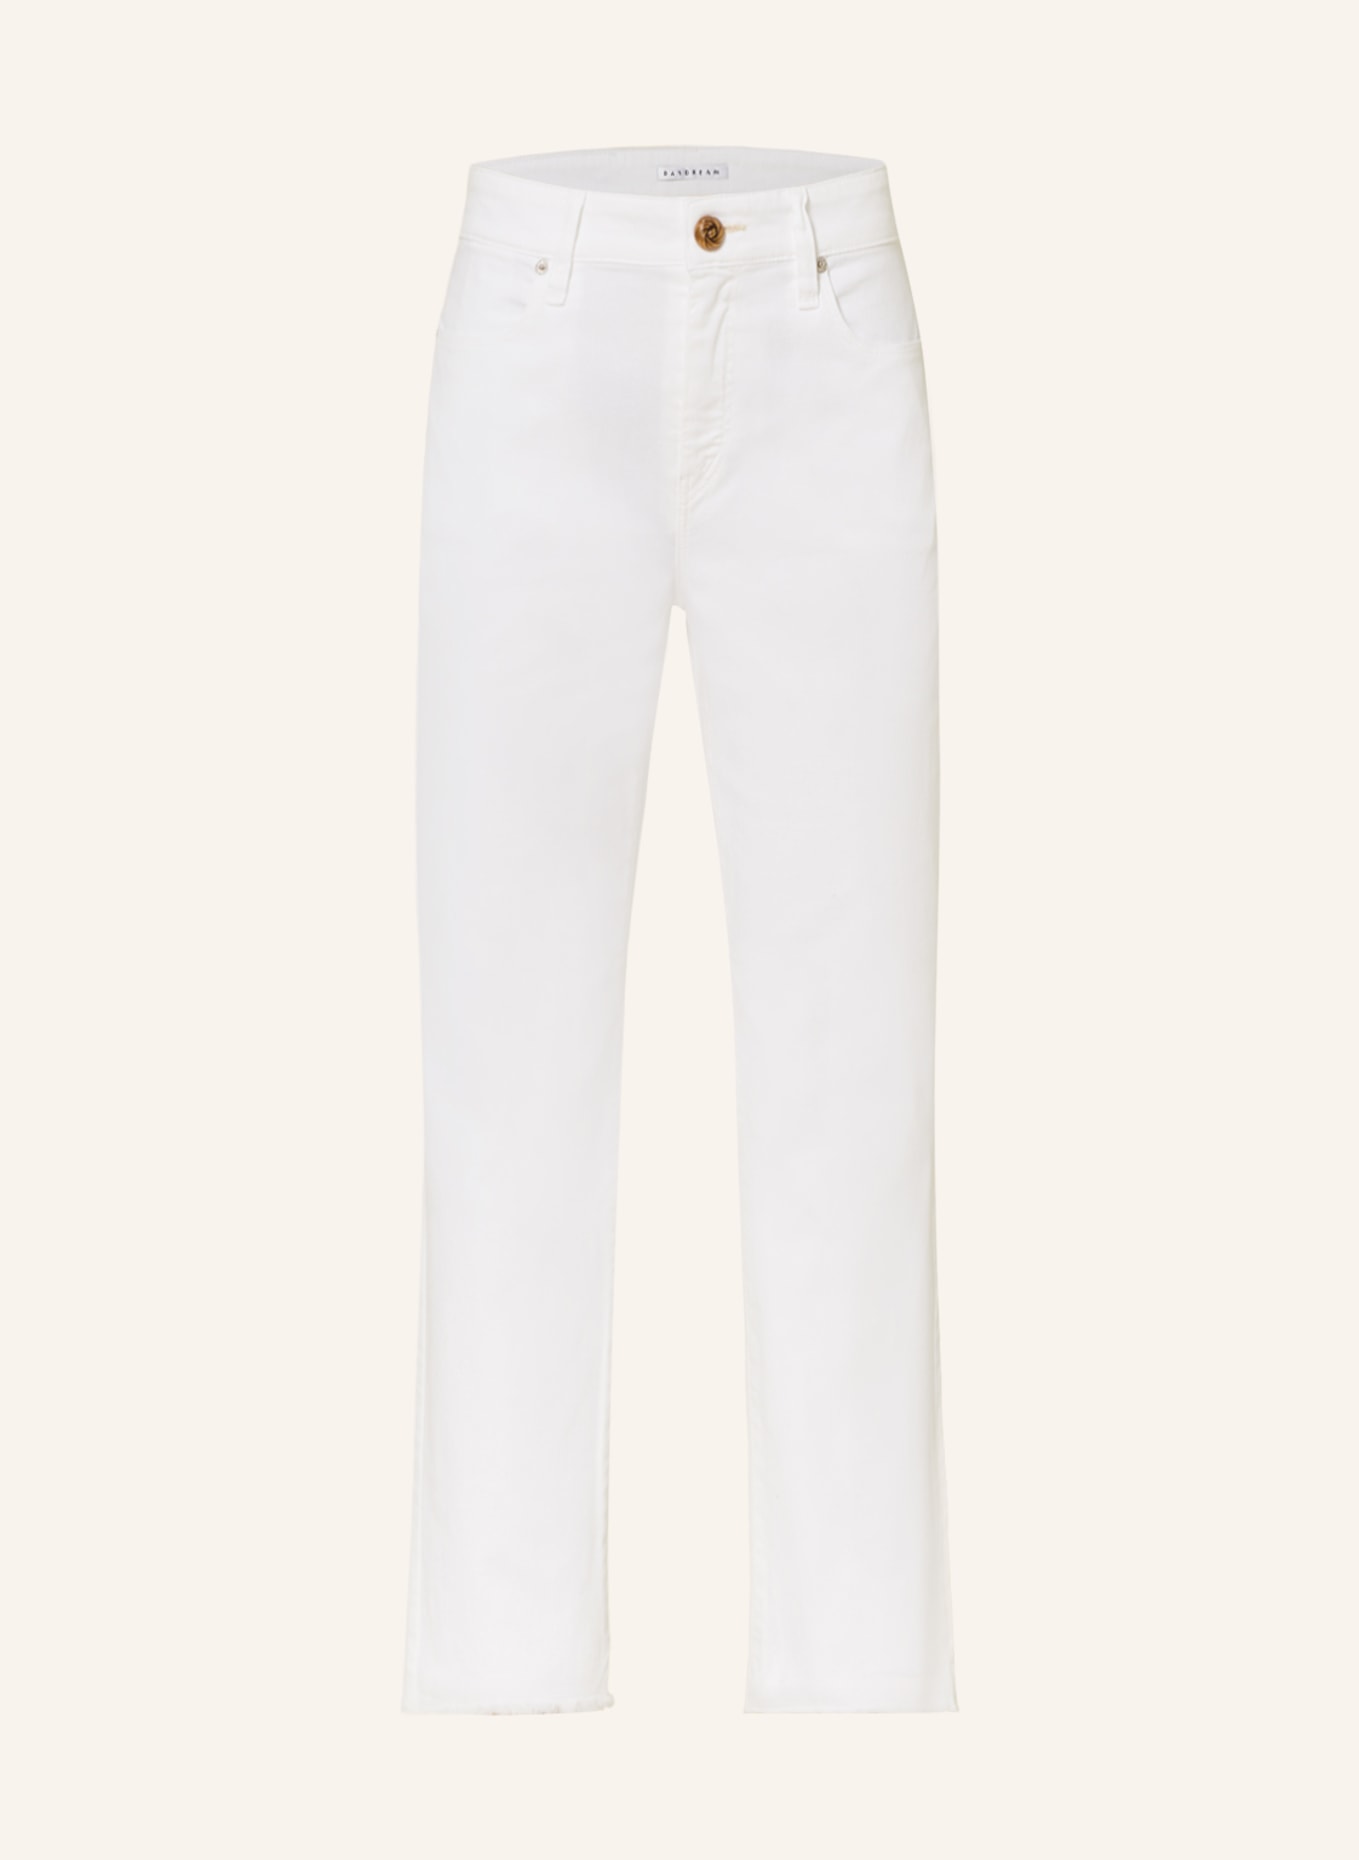 MAC DAYDREAM 7/8 jeans SANTA MONICA, Color: WHITE (Image 1)